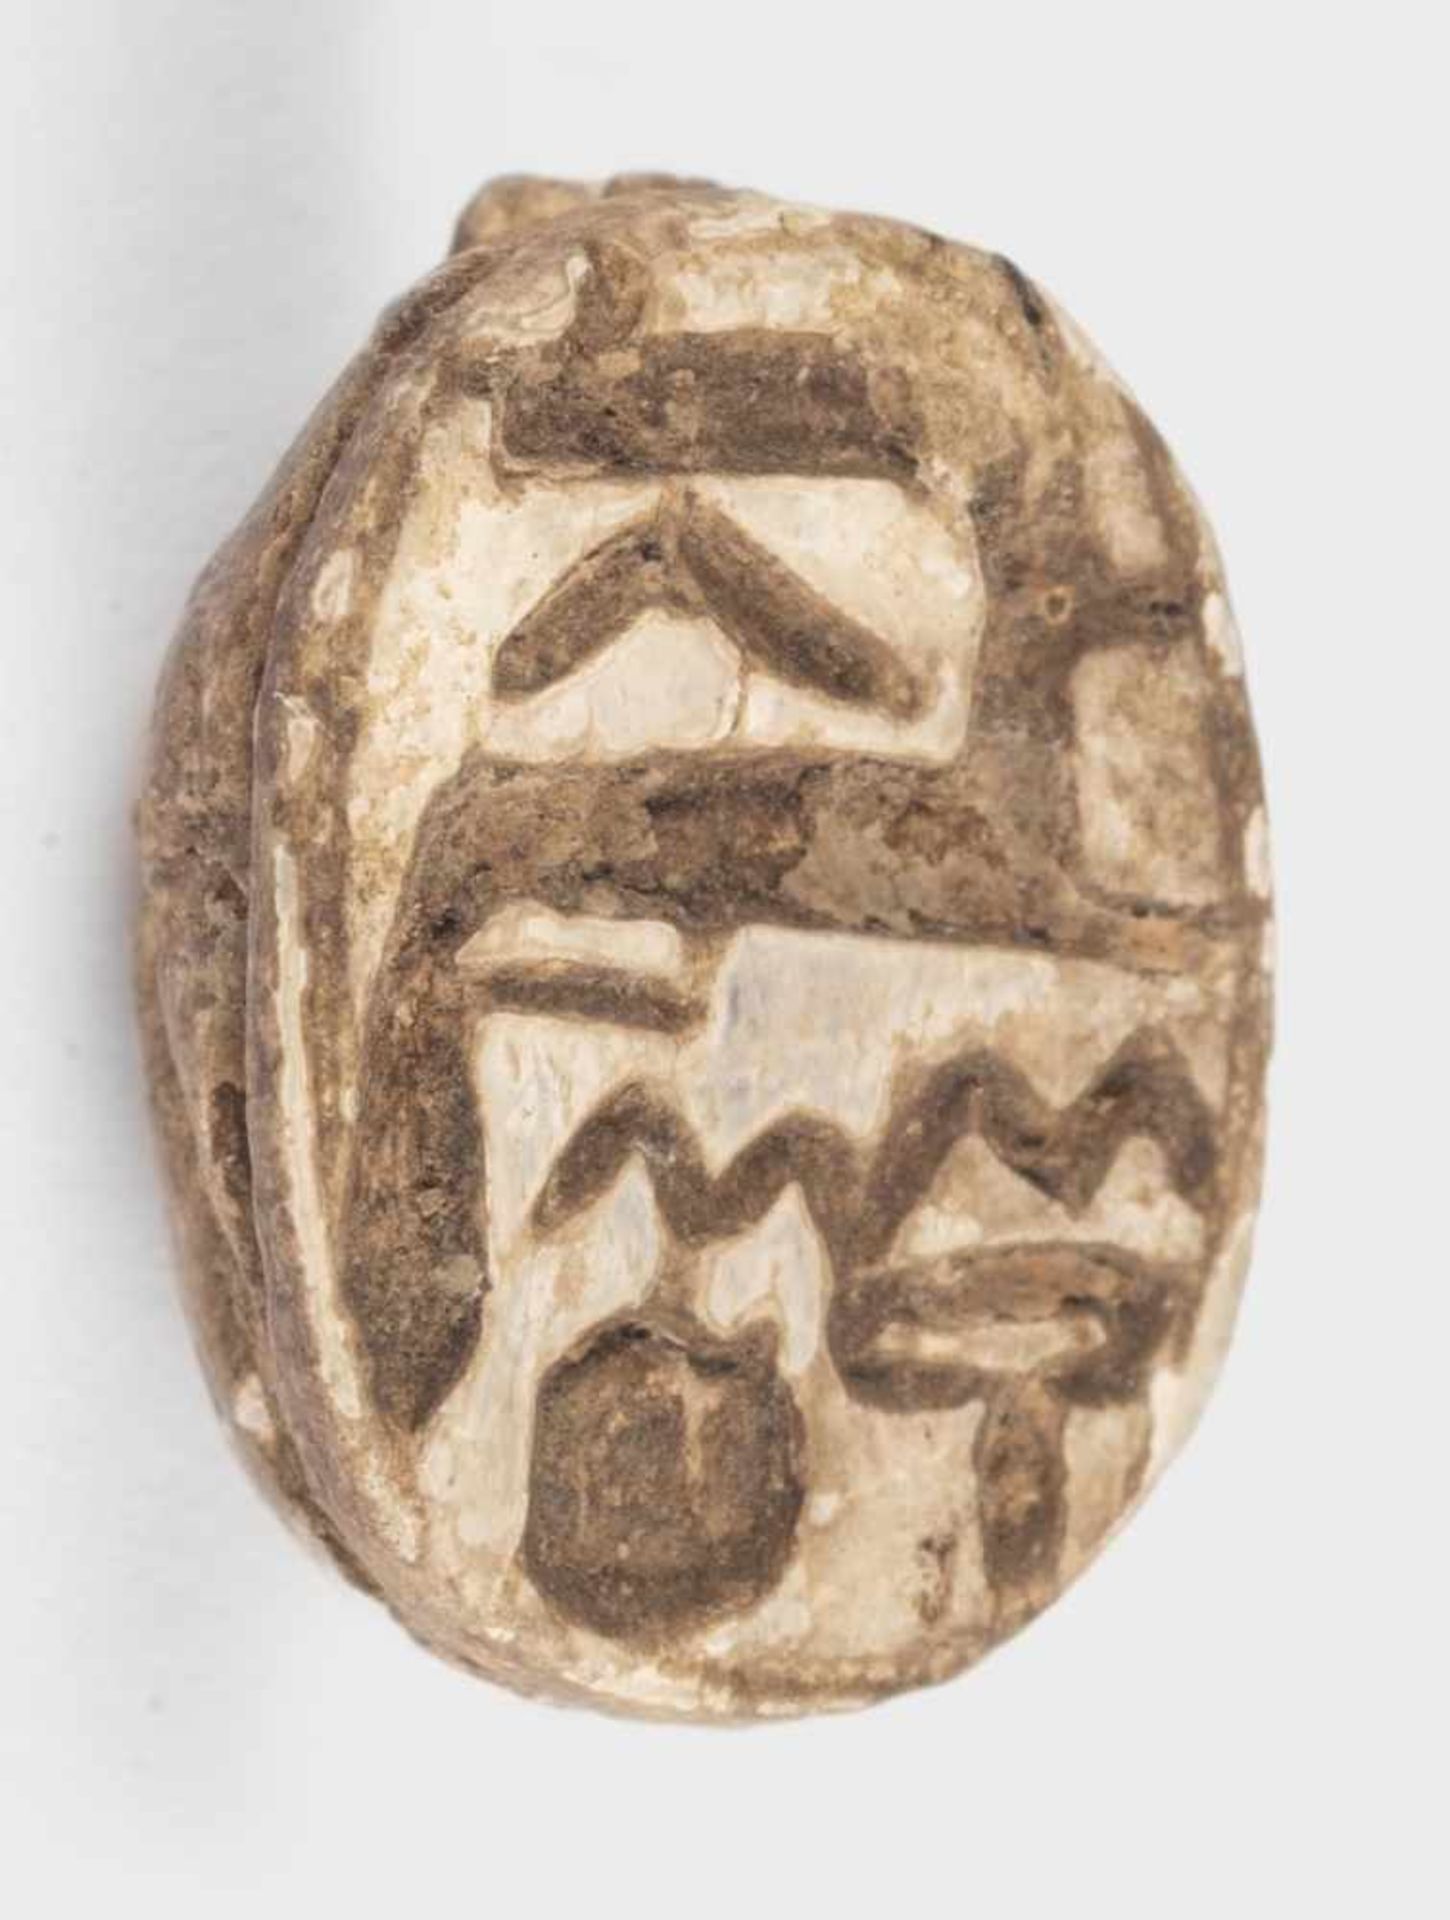 SkarabäusÄgypten, Neues Reich bis Spätzeit (ab 1550 v. Chr.)Steatit, hell-gräulichBreite: 10 mm, - Bild 2 aus 2